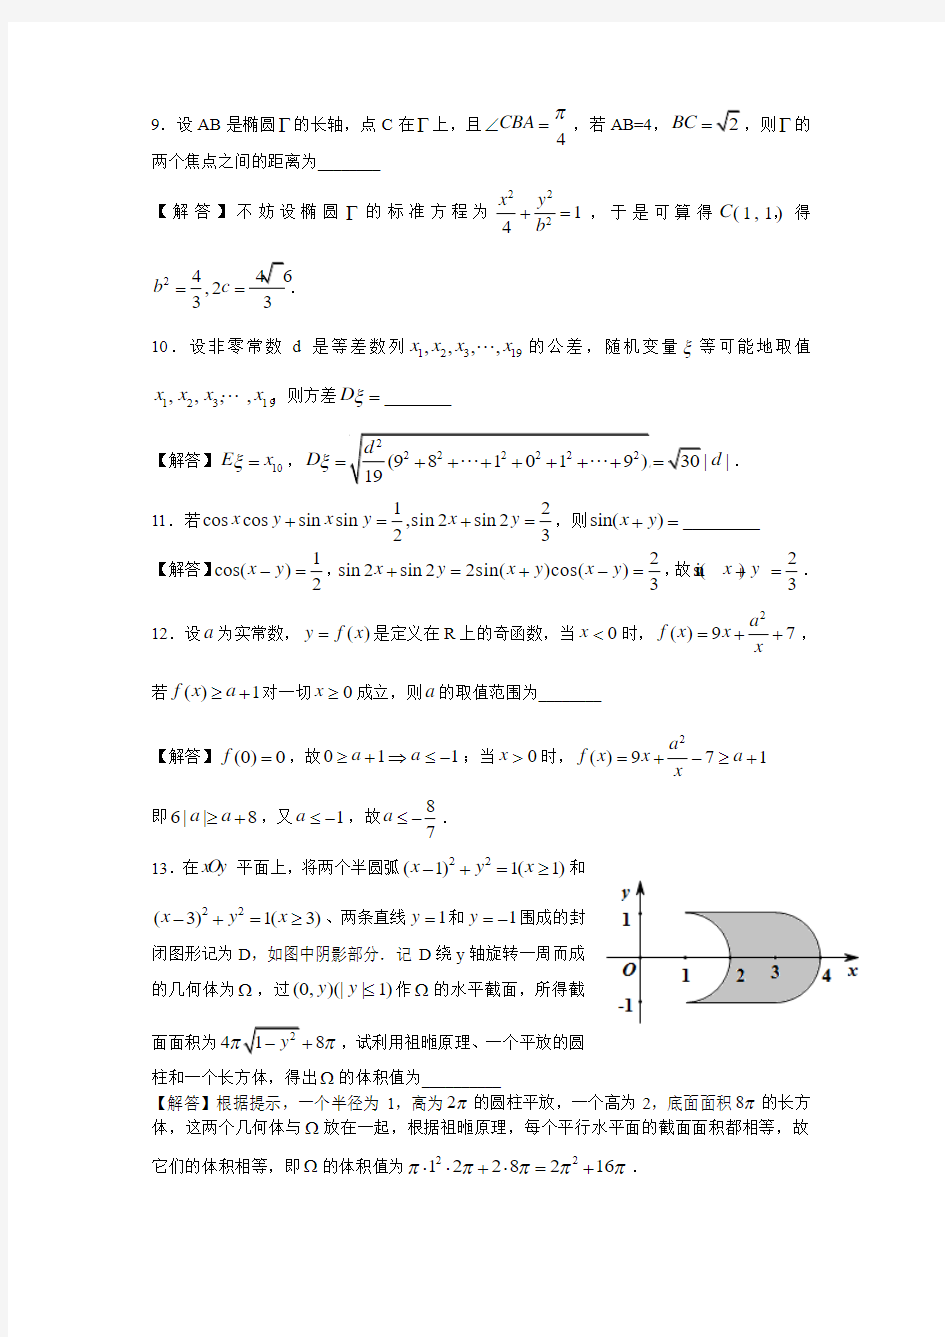 2013年上海市秋季高考理科数学(试卷+答案)